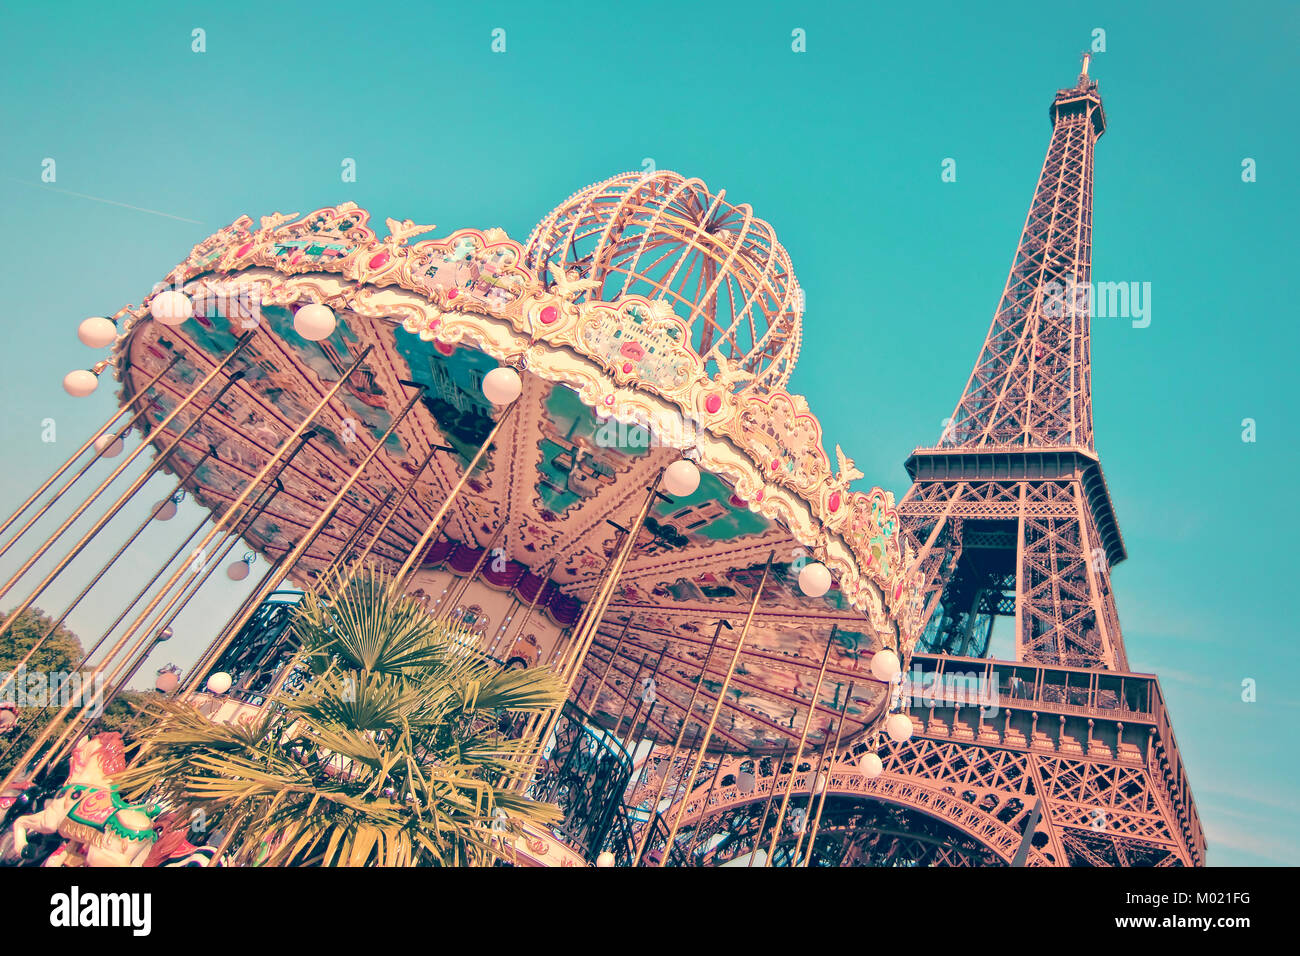 Vintage merry-go-round et la Tour Eiffel, Paris France Banque D'Images